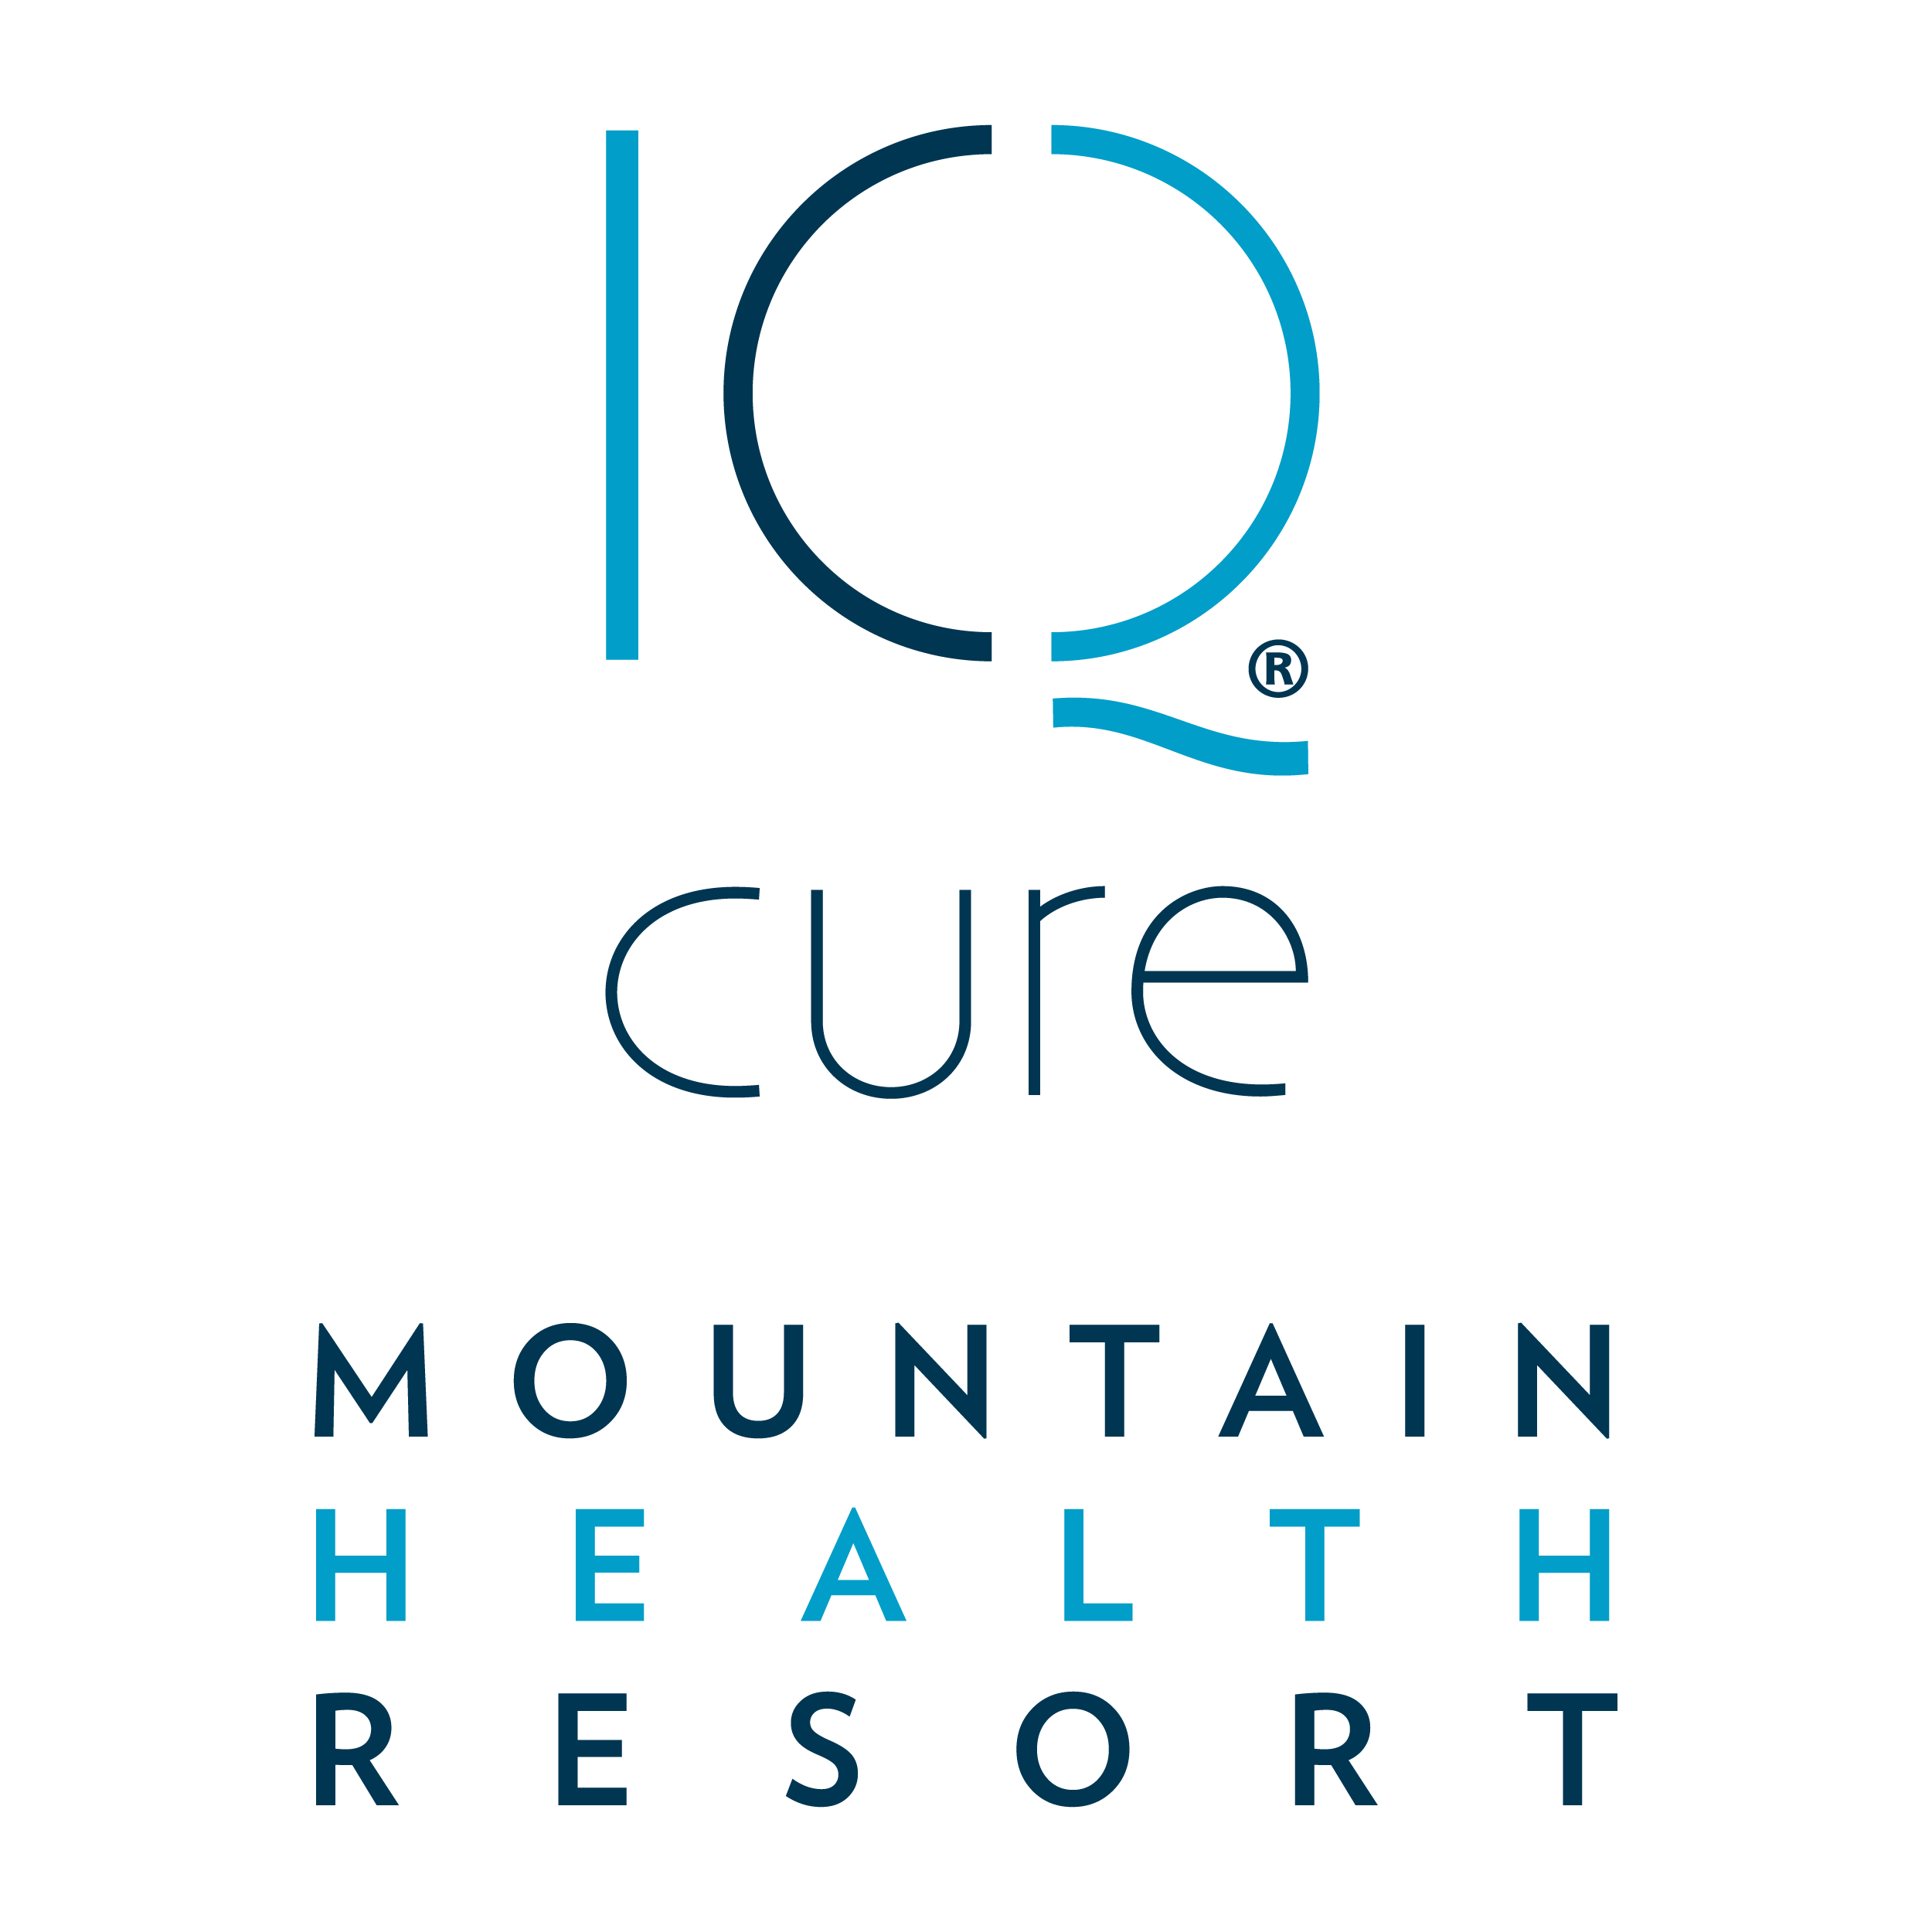 Gesundheitsmarketing - Holistic Health - Mountain Health Resort - Logo